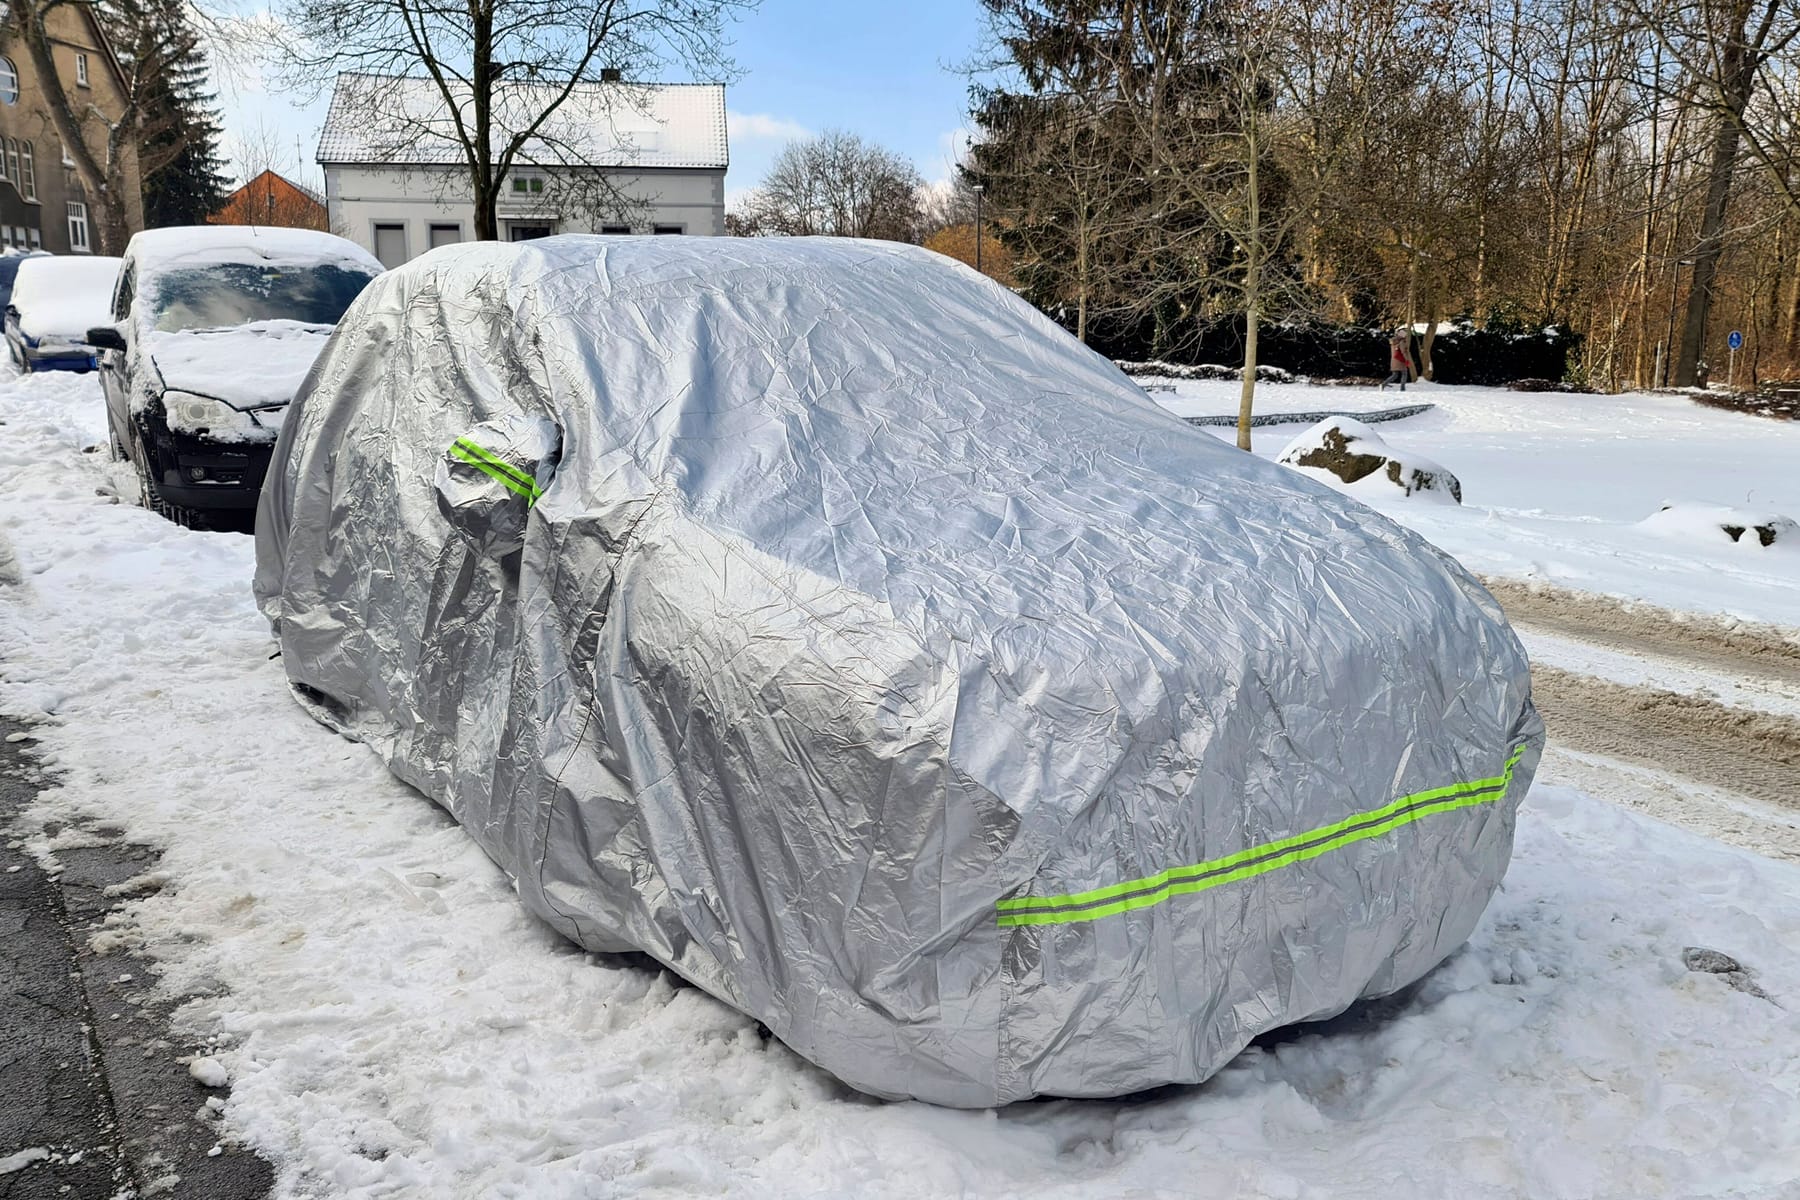 https://images.t-online.de/2023/02/6oBwslVBQmh9/310x0:3380x2253/fit-in/__WIDTH__x0/auto-unter-schutzplane-am-verschneiten-strassenrand-im-winter-deutschland-car-under-tarpaulin-on-snow-covered-roadside-in-winter-germany-blws639685-car-under-tarpaulin-on-snow-covered-roadside-in-winter-germany-blws639685-copyright-xblickwinkel-fotototox.jpg